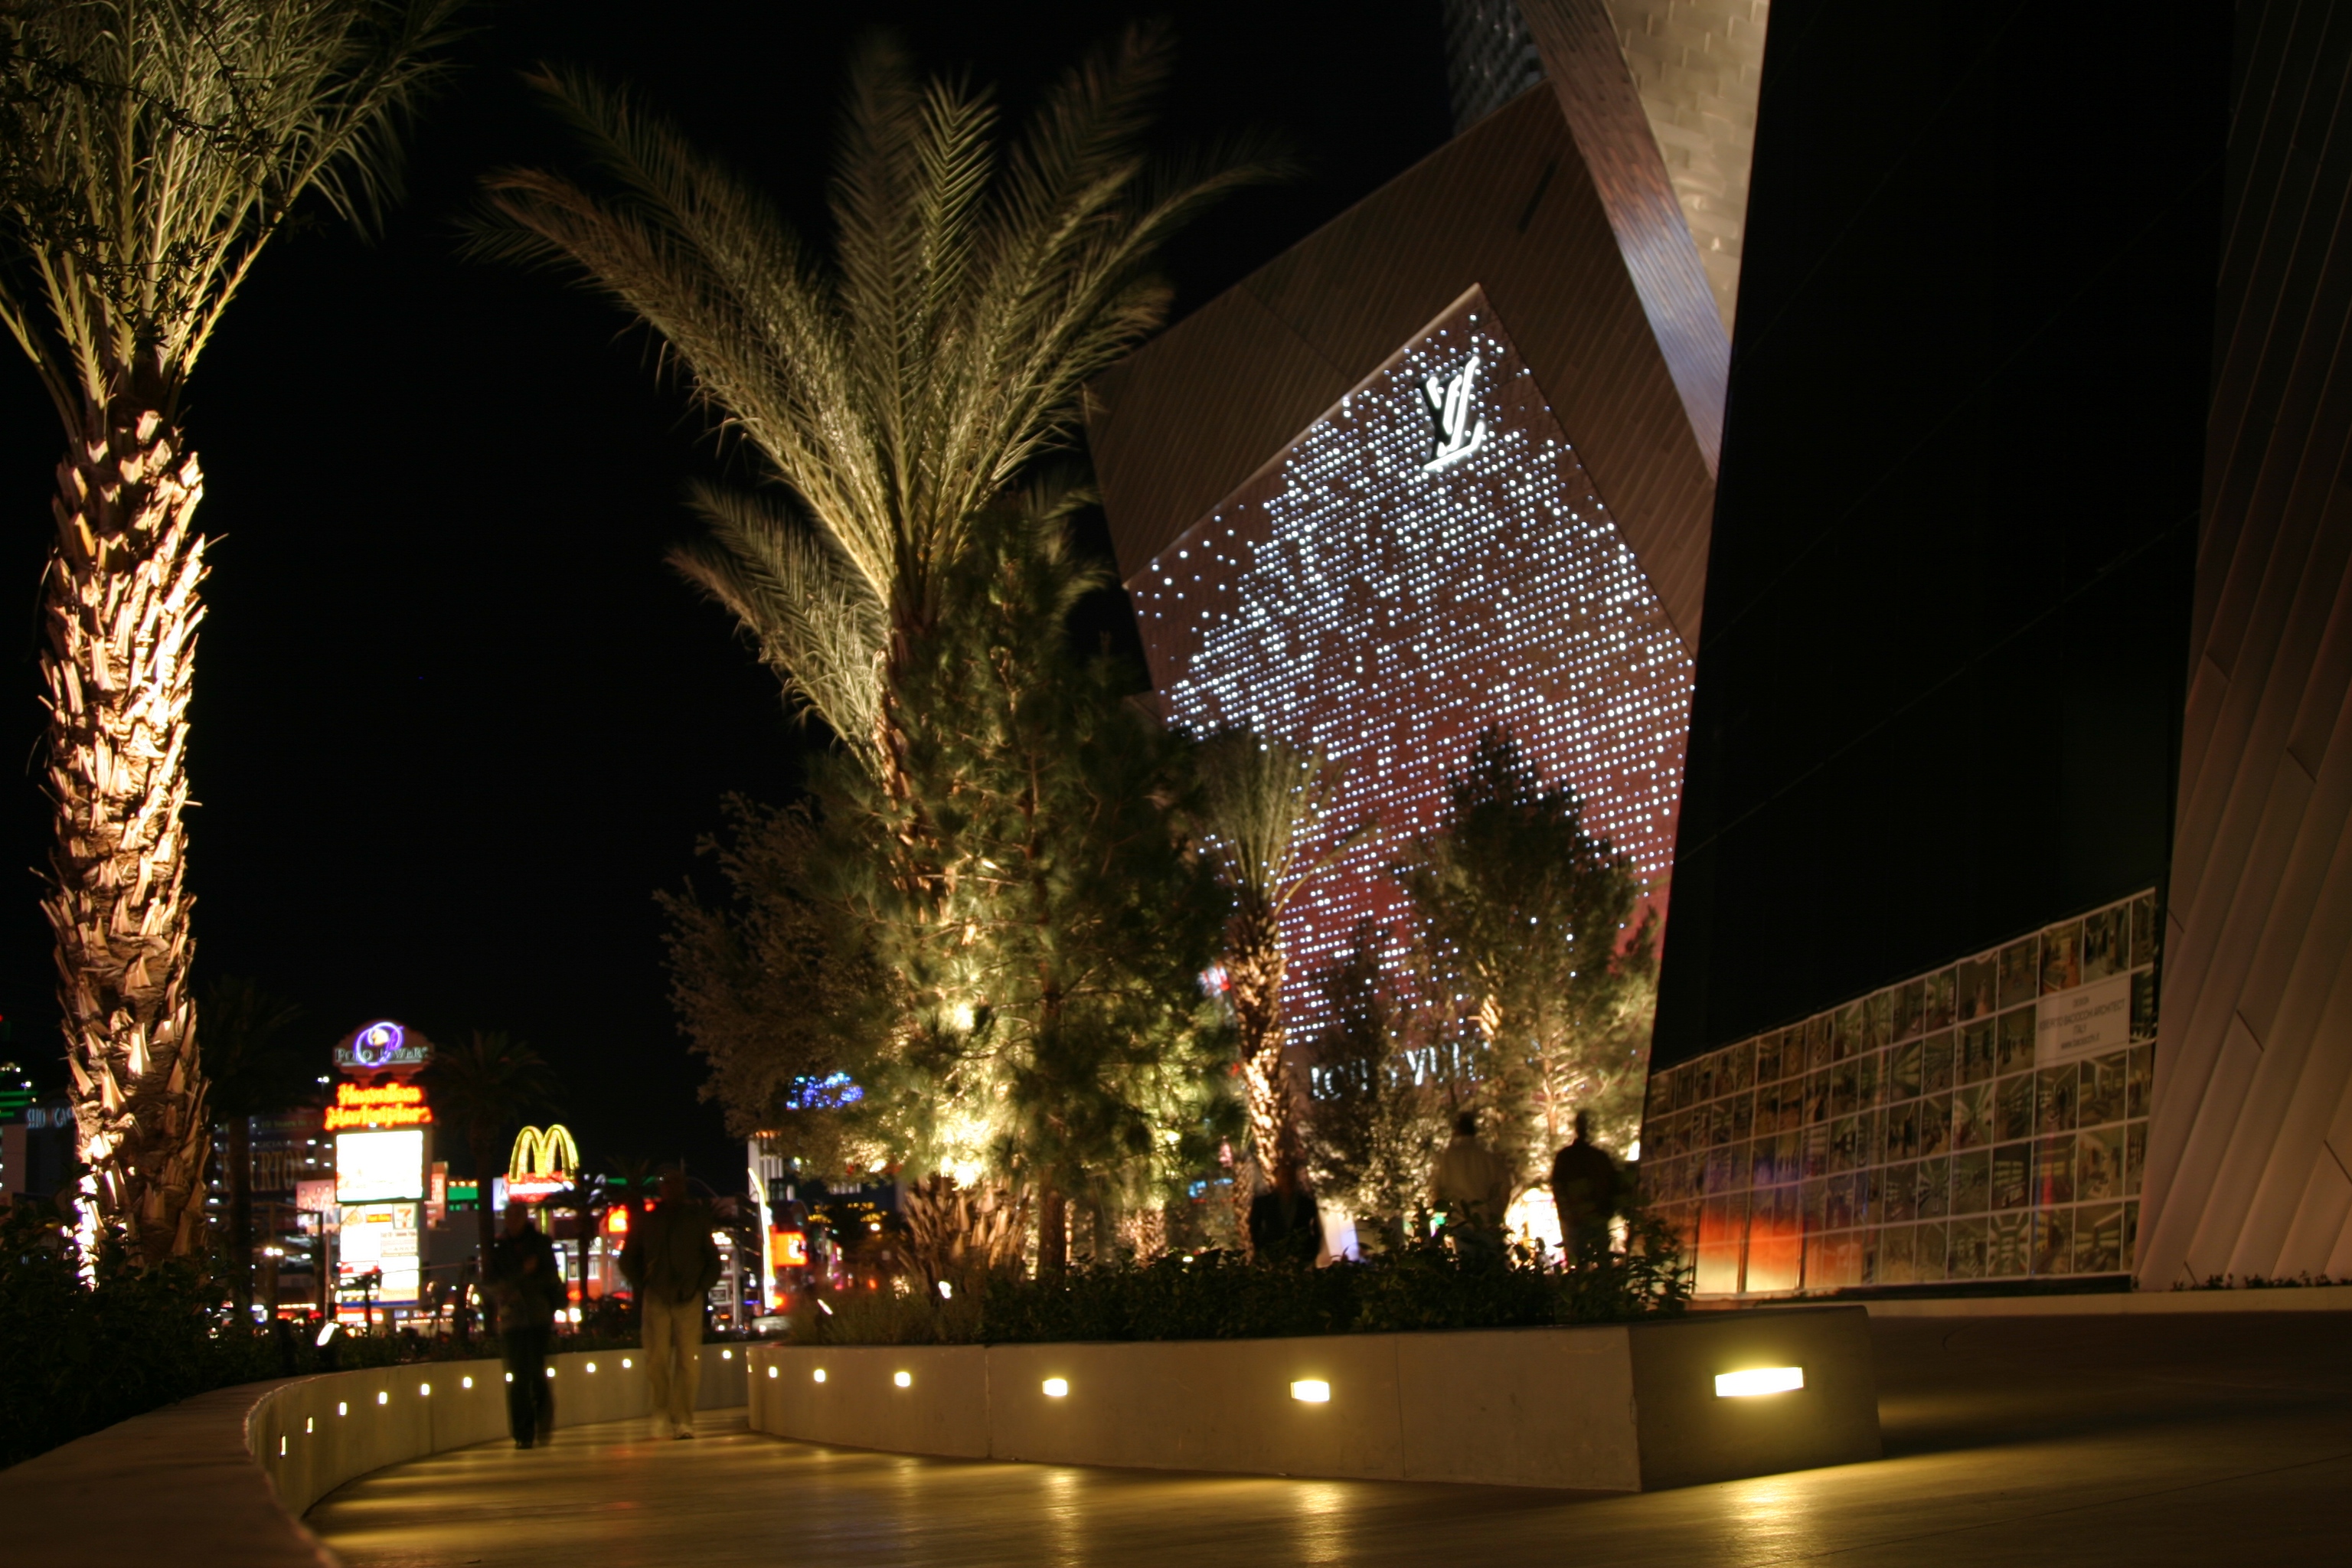 Louis Vuitton Las Vegas, LED Feature Facade